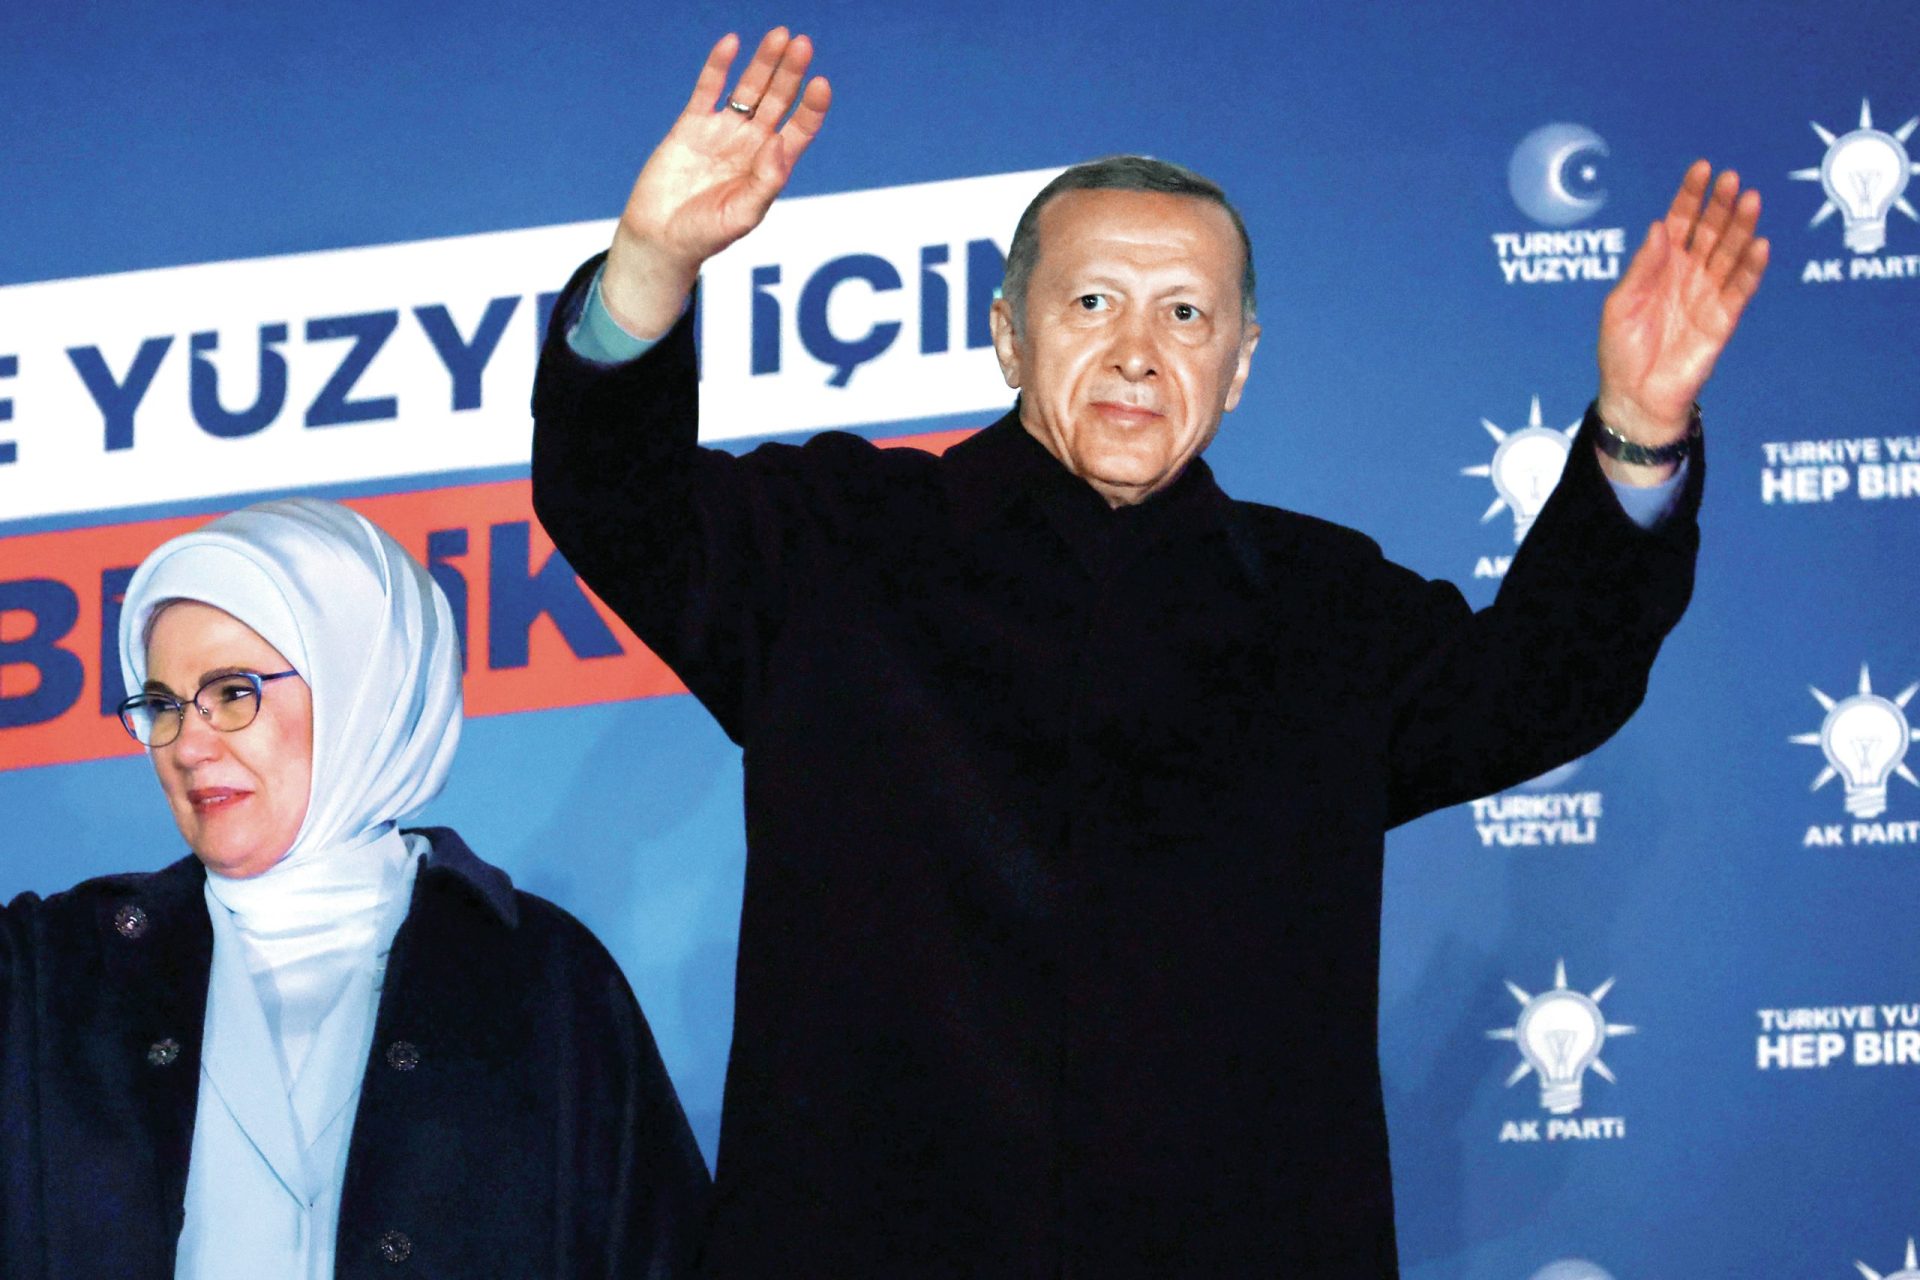 Turquia: Erdogan na frente